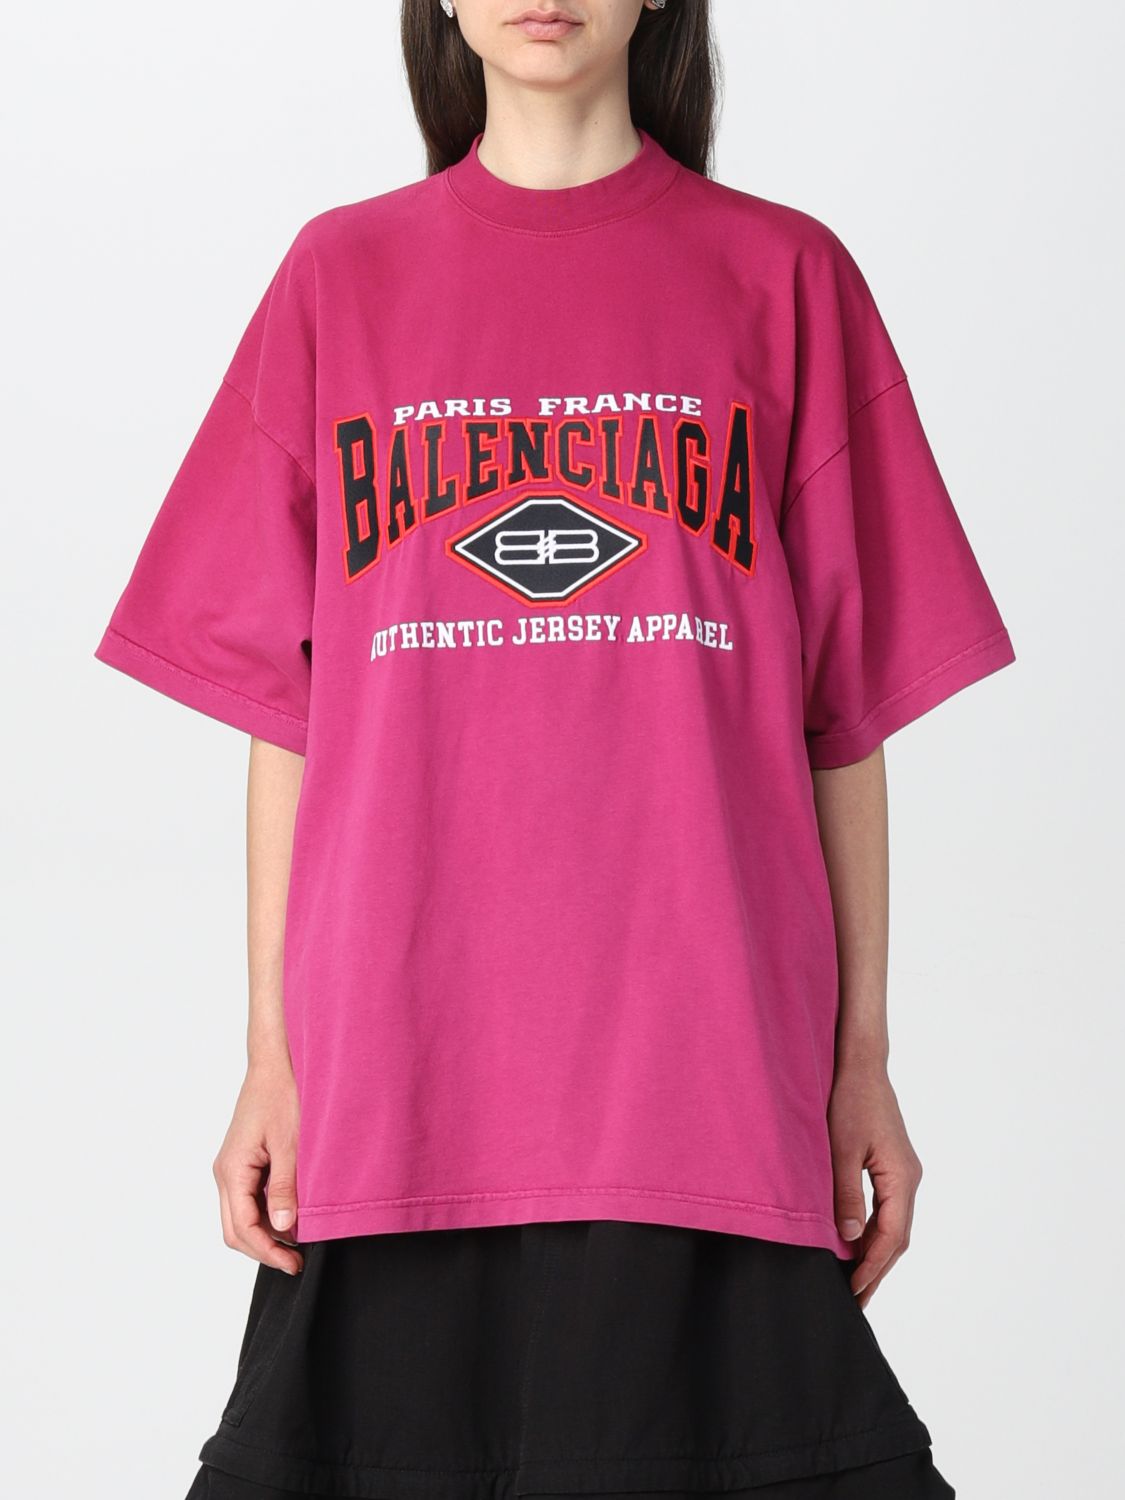 人気急上昇 BALENCIAGA バレンシアガ 半袖Tシャツ クルーネック ピンク 